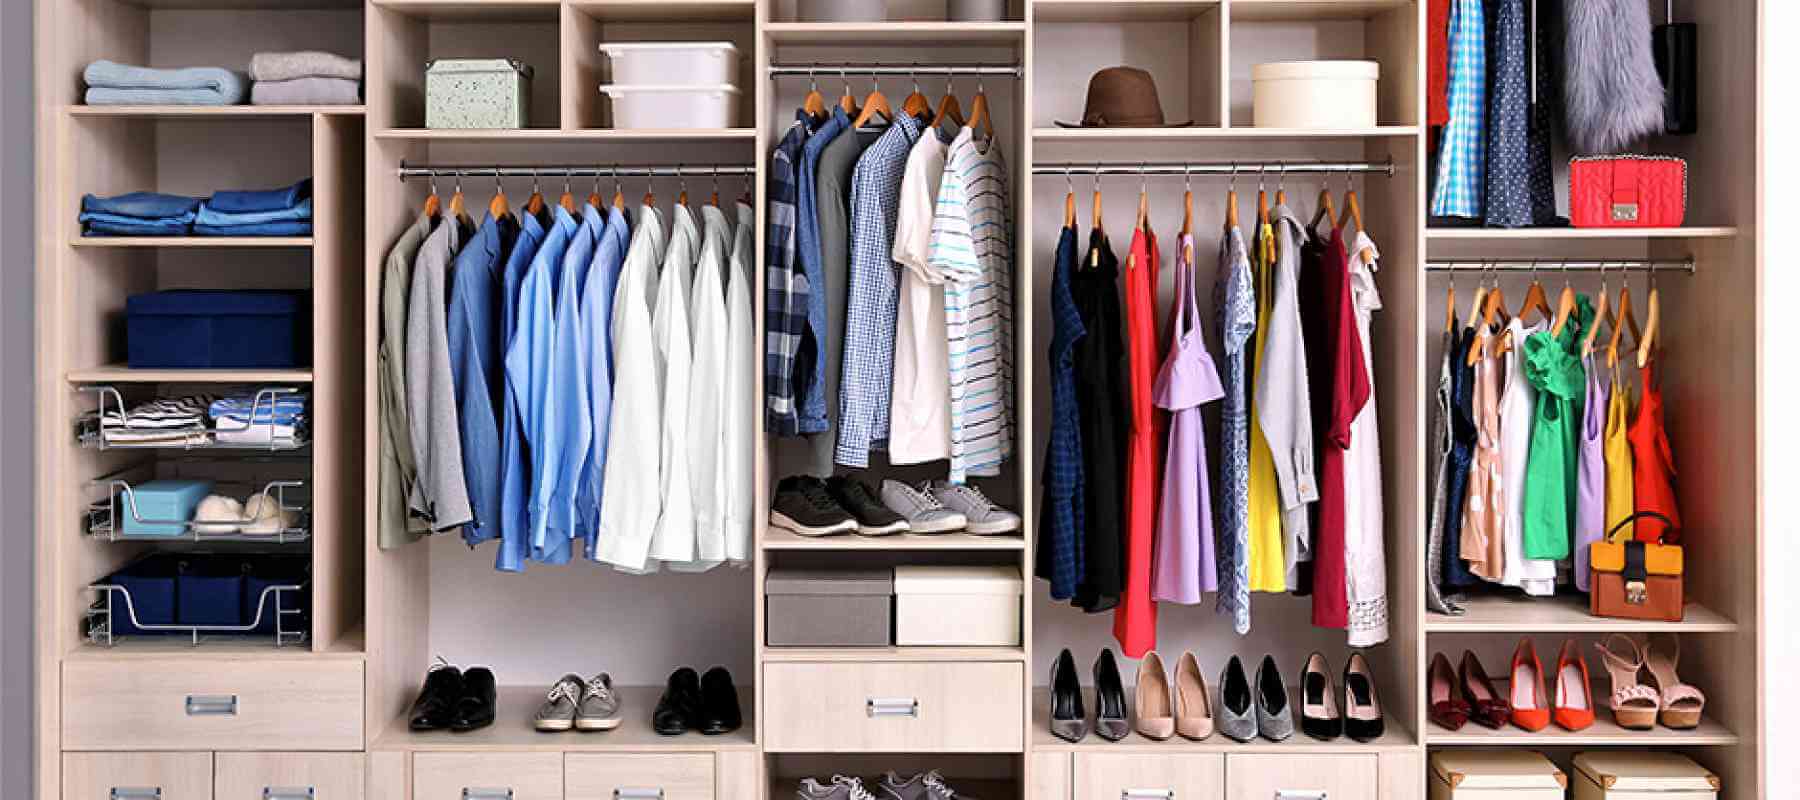 How To Arrange Your Closet